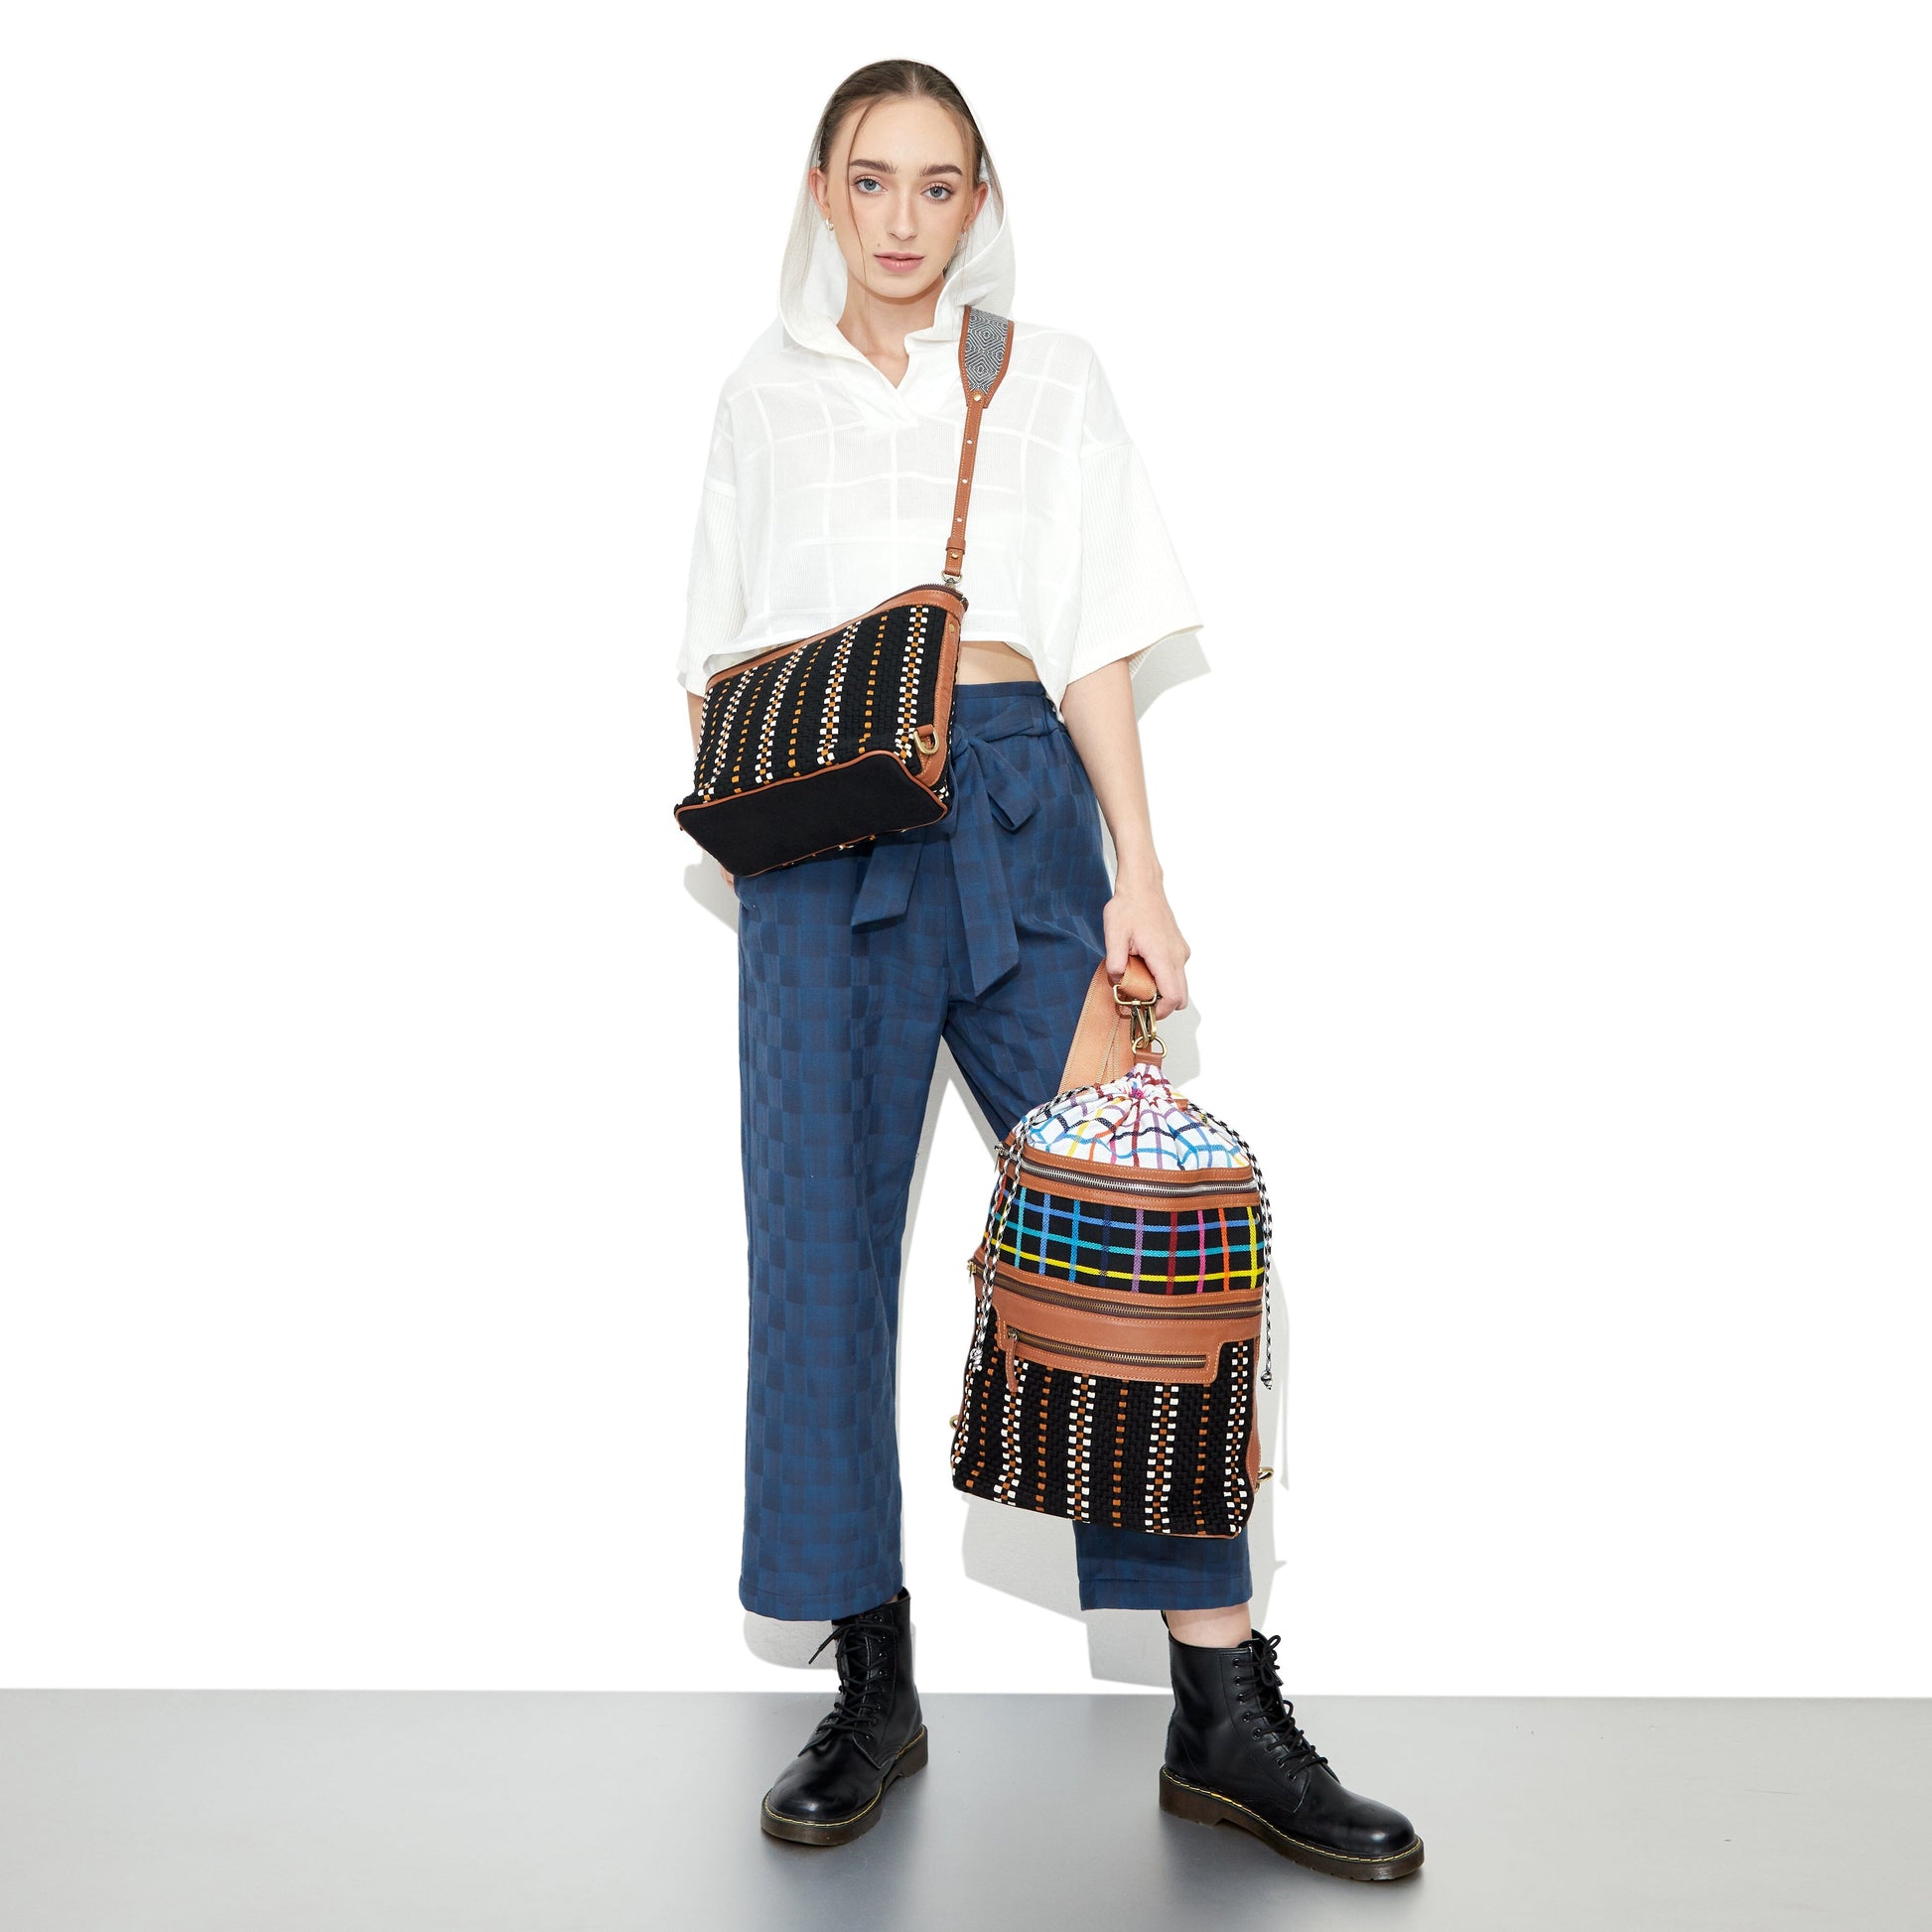 [R2R x DoiTung] Three-Tiered Bag Fashion Rags2Riches